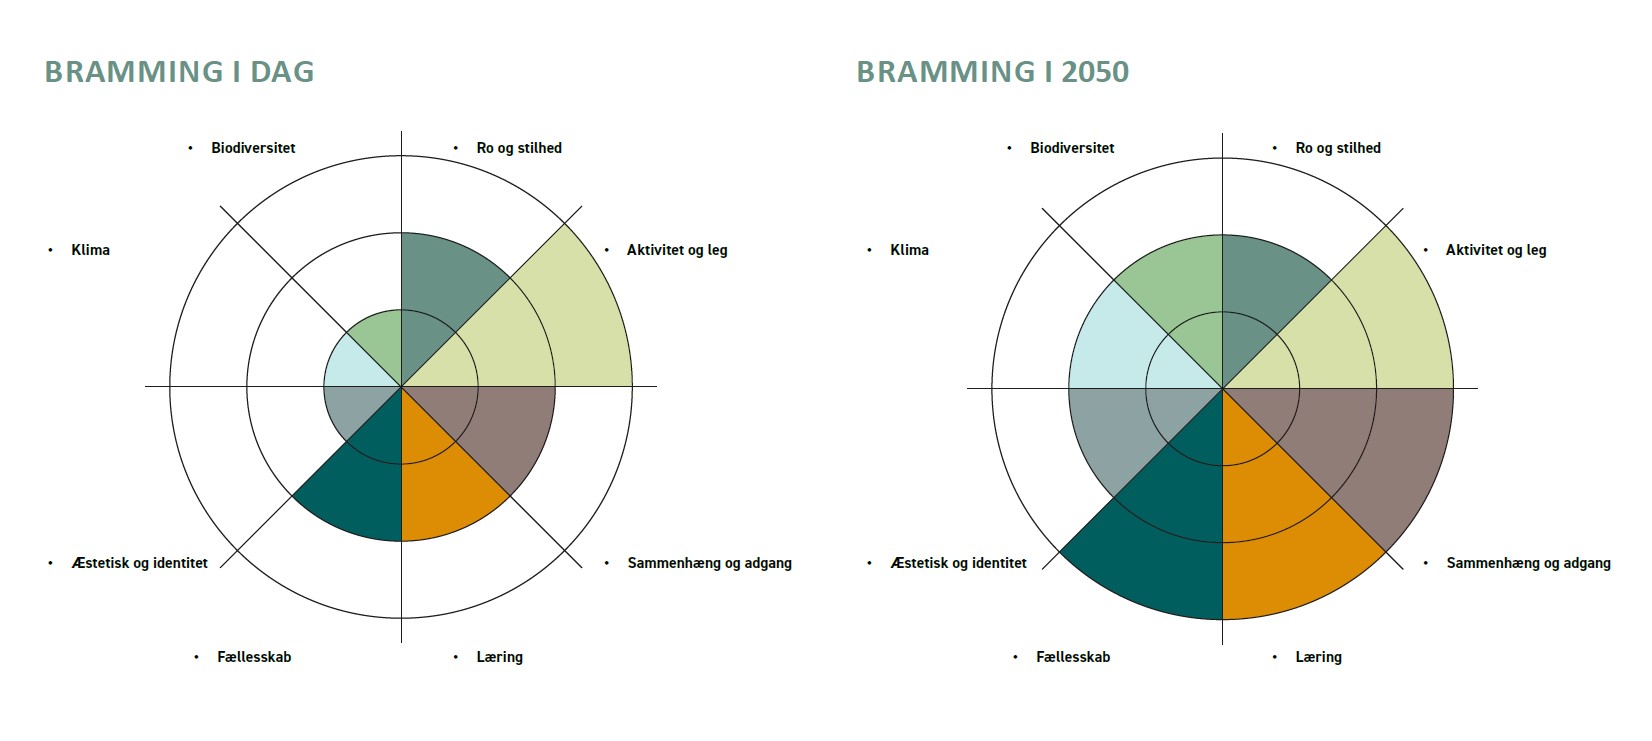 Statuskompas og udviklingskompas for Bramming opstillet ved hjælp af det grønne værktøj. 